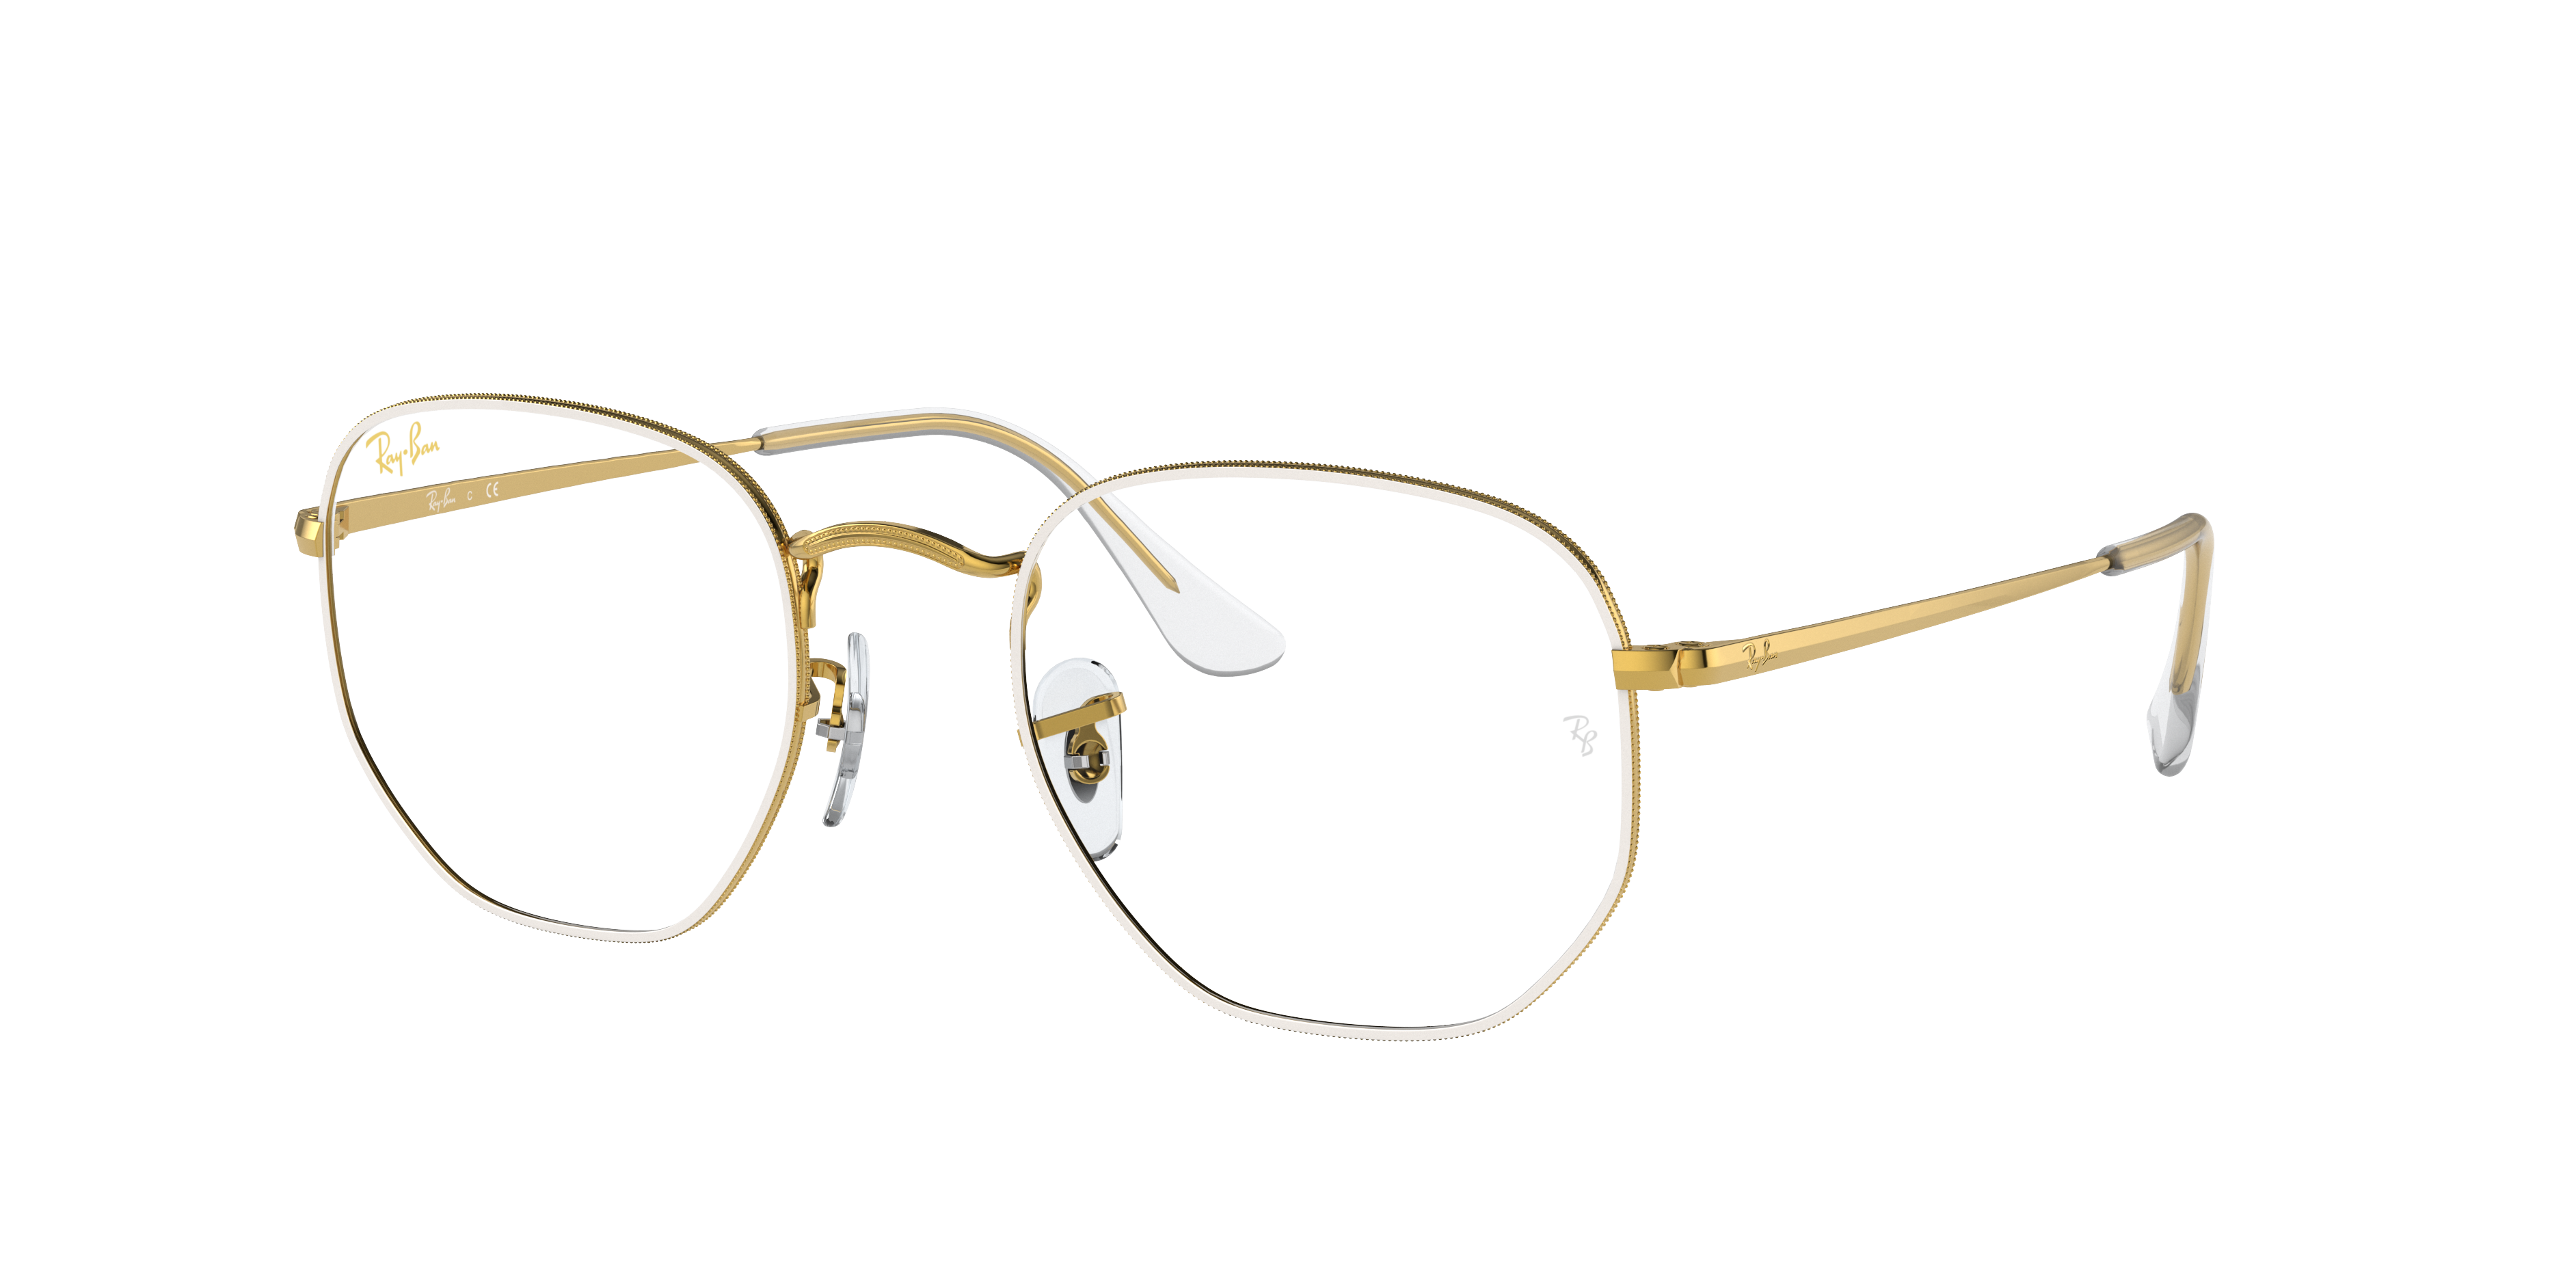 Hexagonal Optics Eyeglasses with White Frame | Ray-Ban®